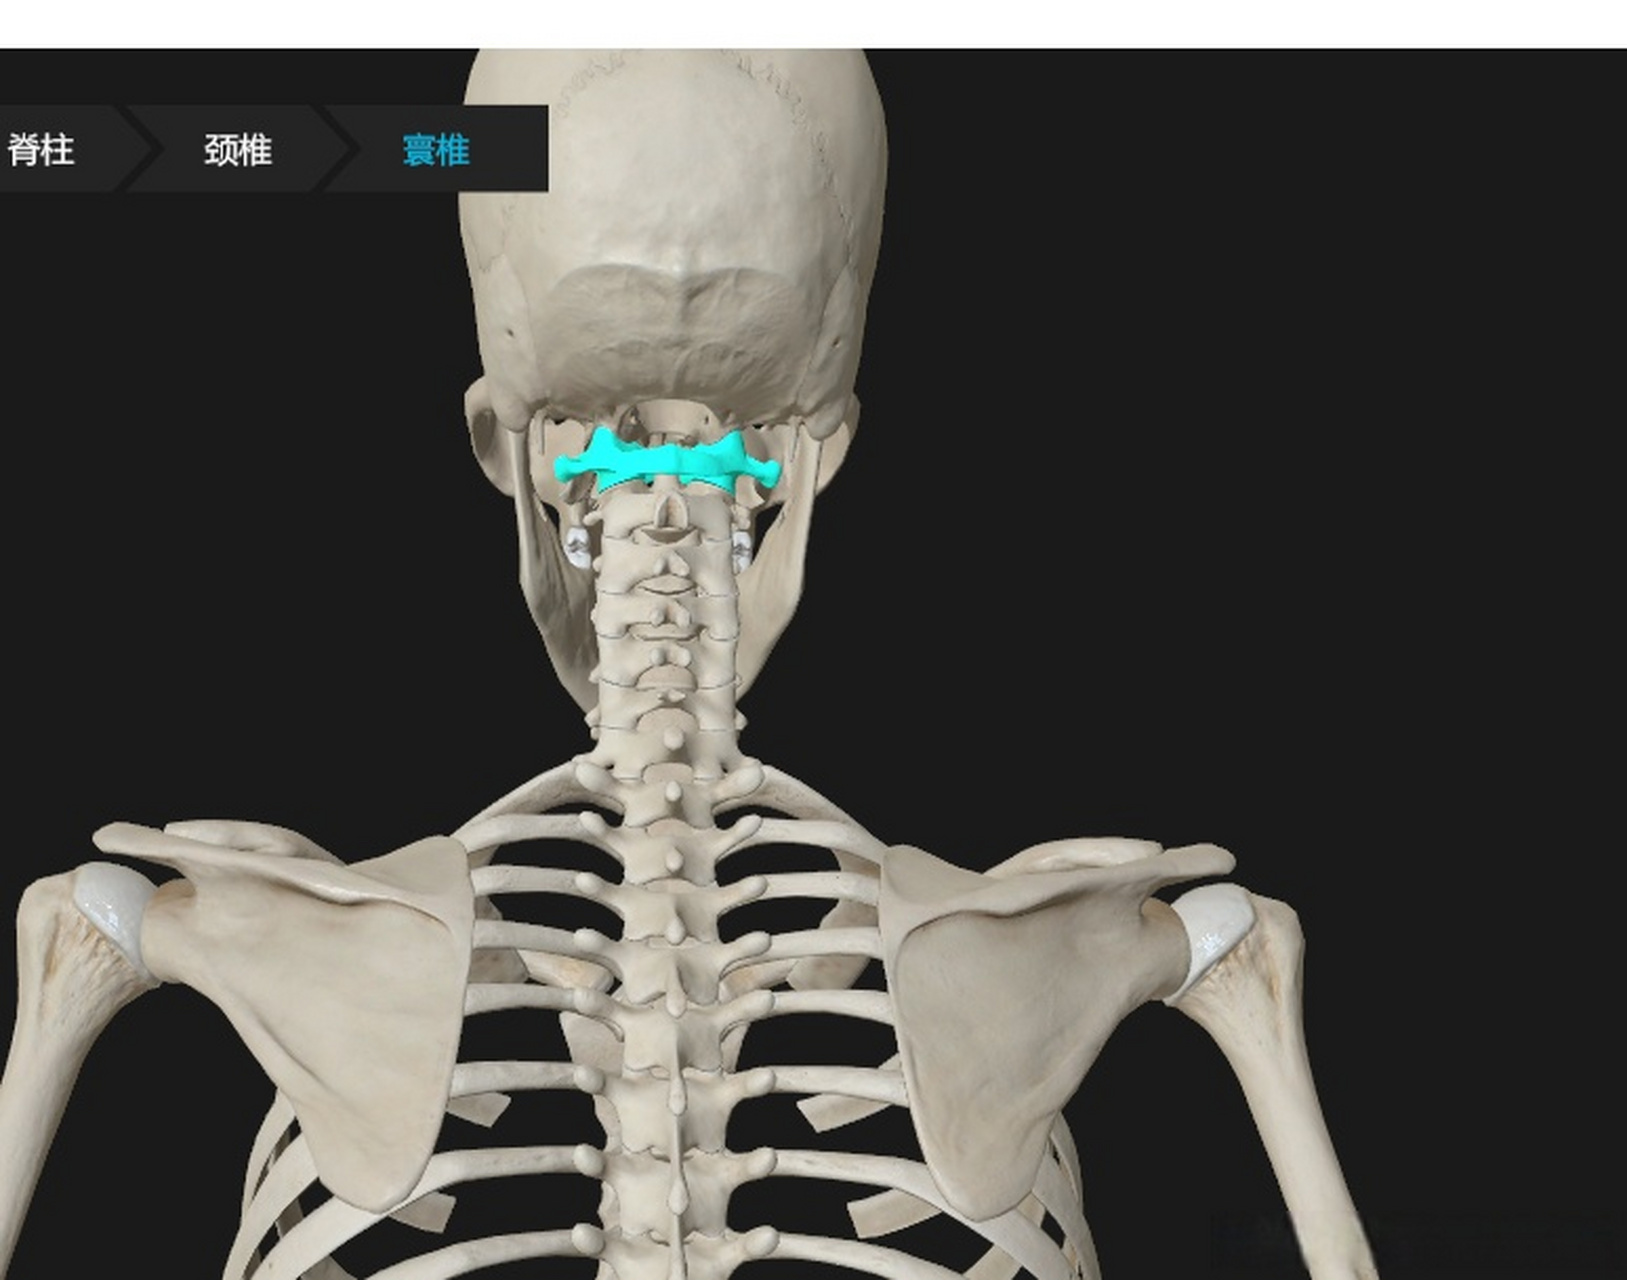 寰椎即第一颈椎,因为像个环一样,所以叫 huan 椎,直接与枕骨相连,没